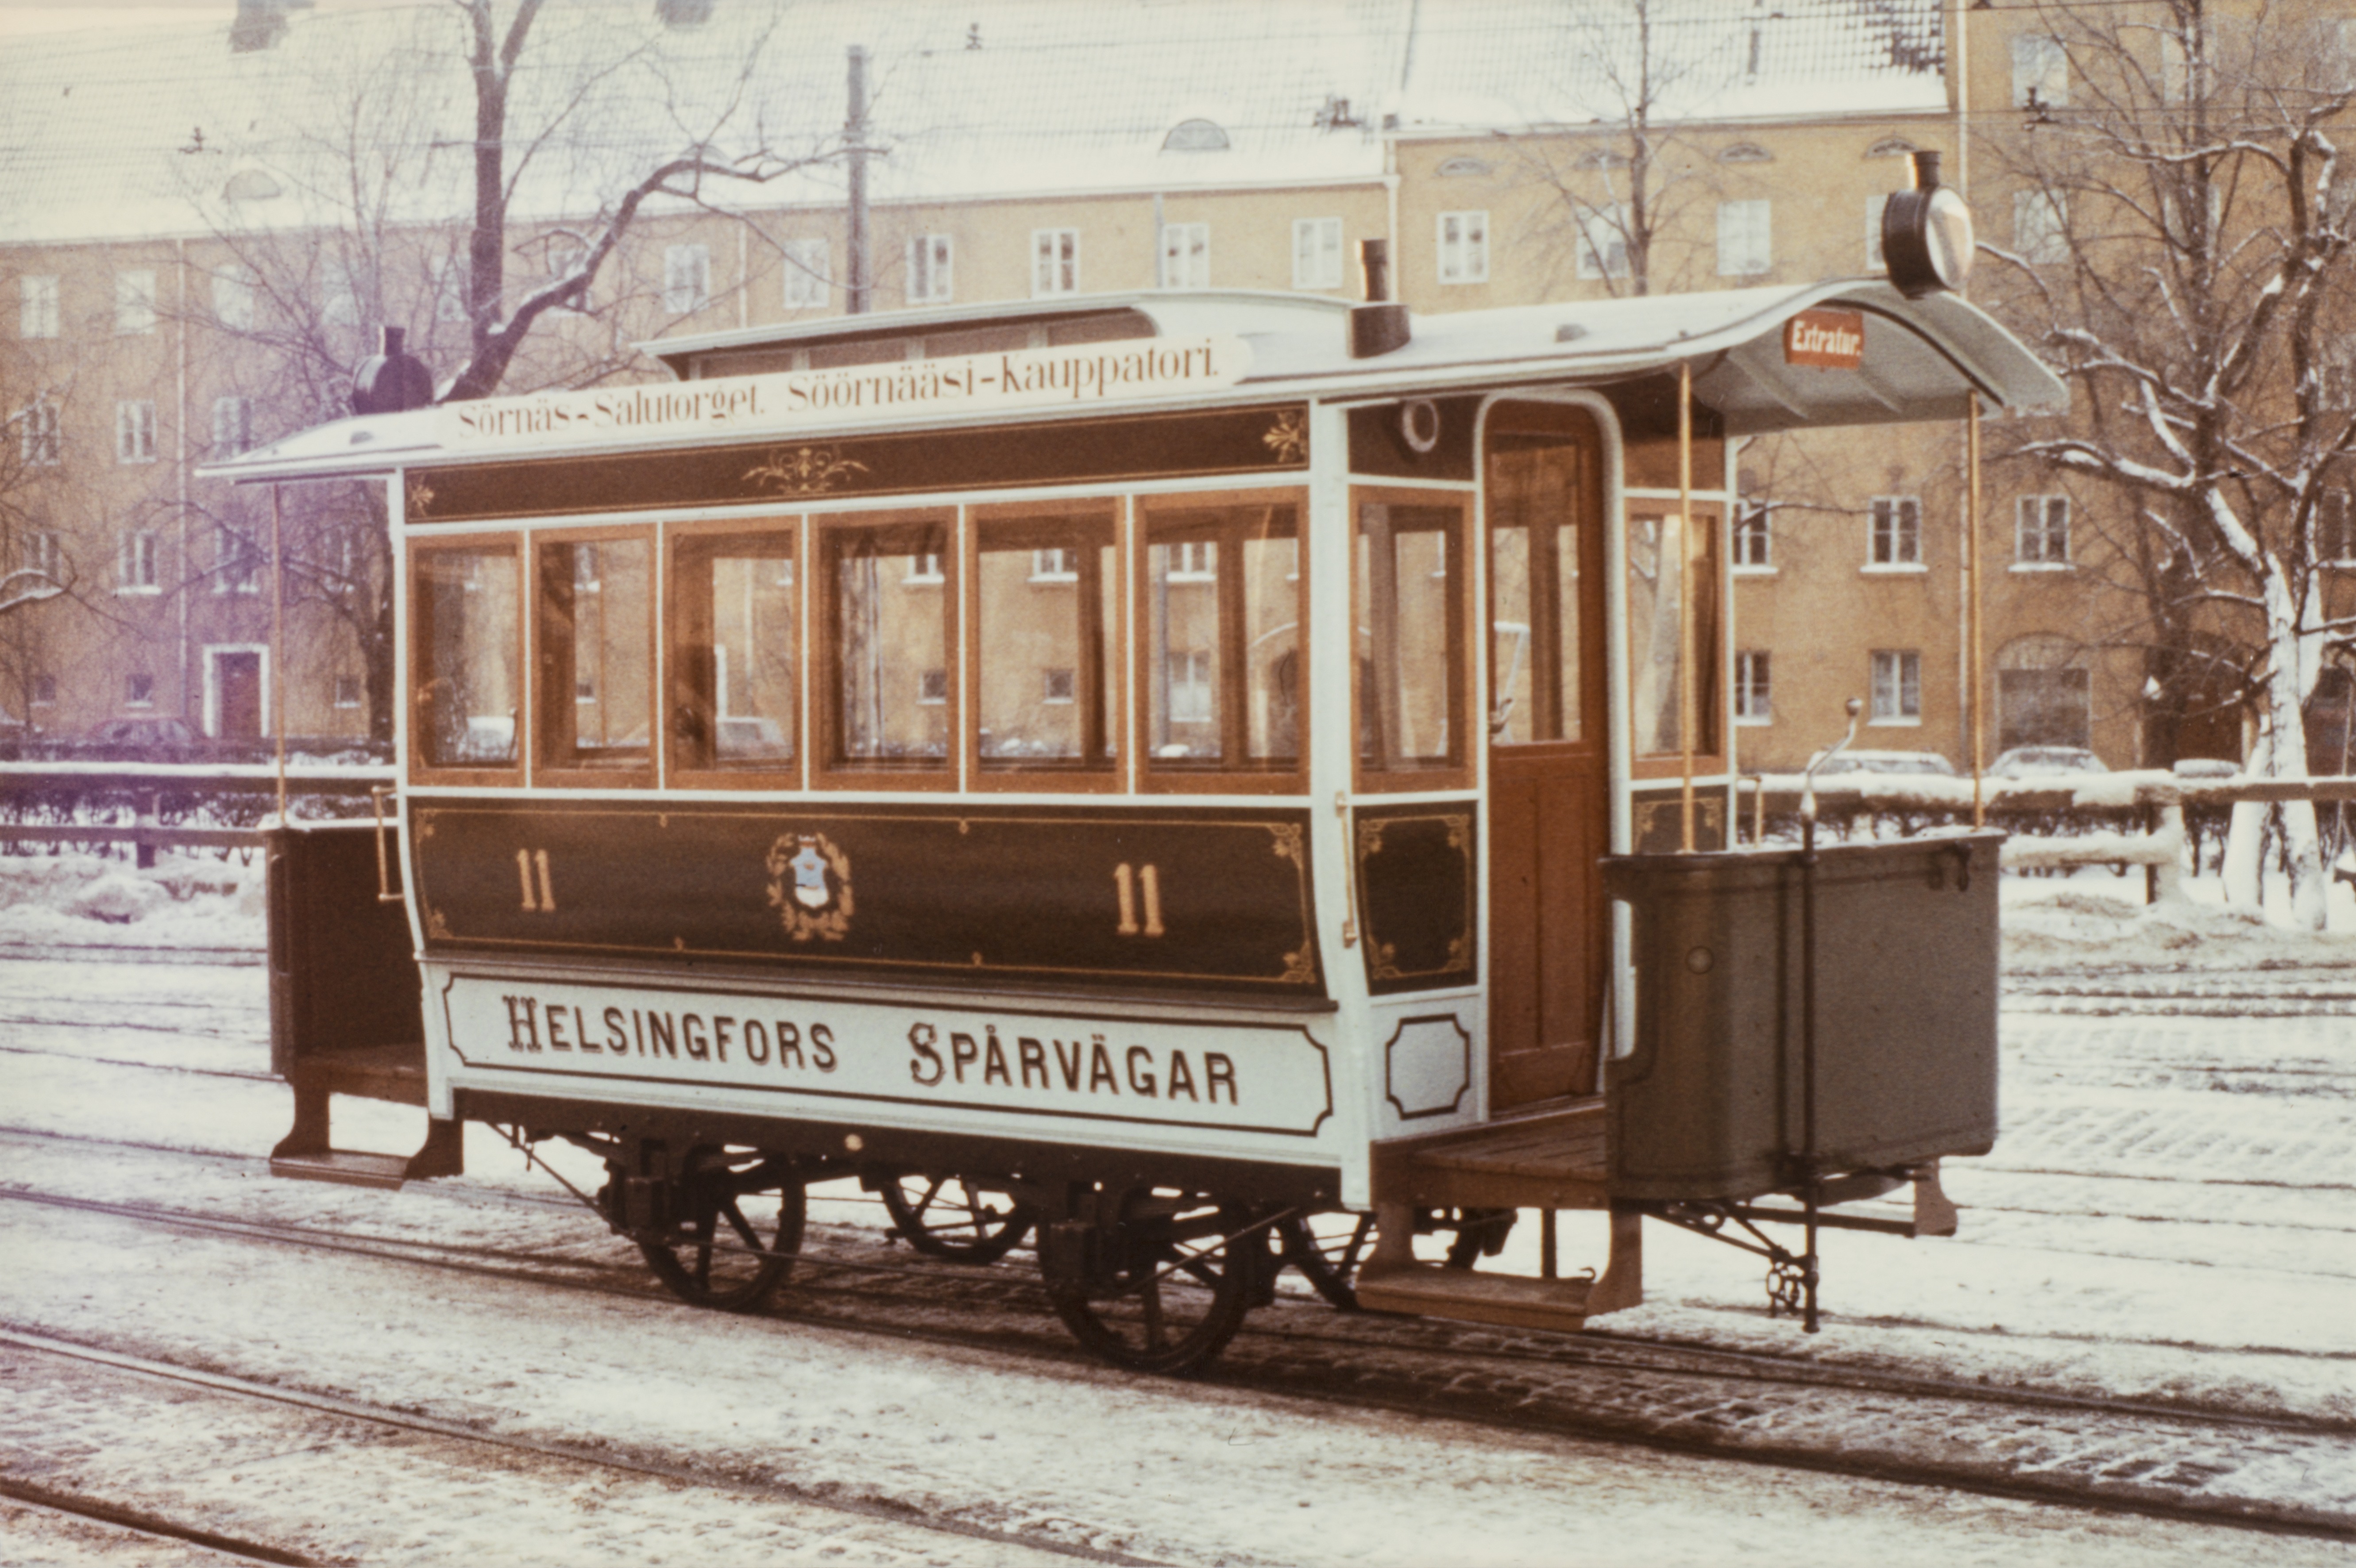 Hevosraitiovaunu (HRO-11, valmistettu 1890) talvella Vallilan varikon ulkopuolella, mahdollisesti vuonna 1978 tehdyn entisöinnin jälkeen. Vaunussa lukee Helsingfors spårvagnar, Sörnäs-Salutorget ja Söörnääsi-Kauppatori.